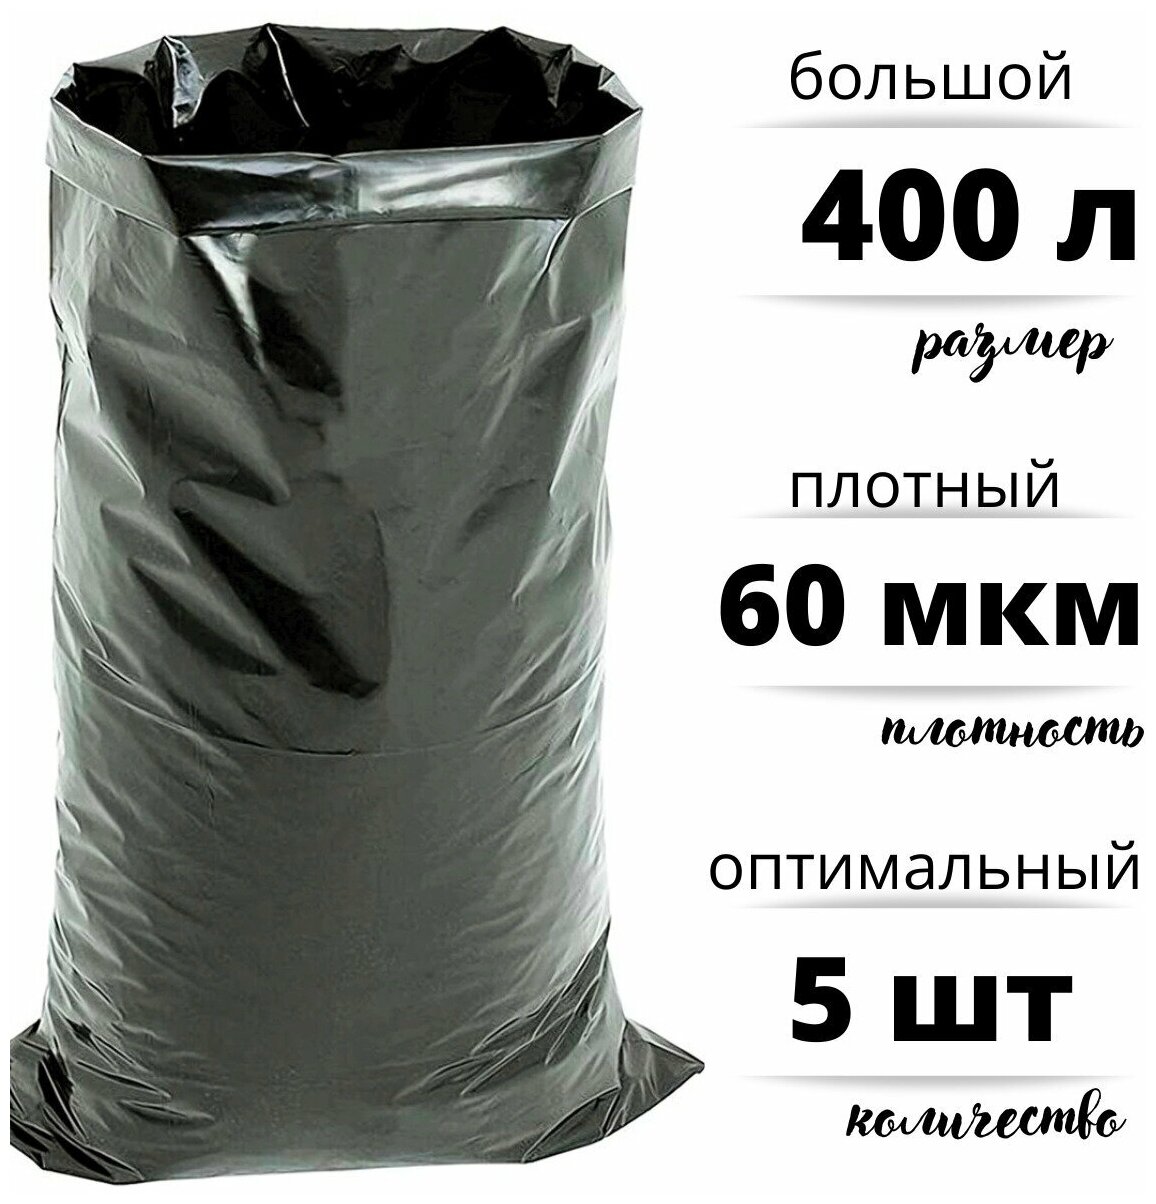 Мешки для строительного и бытового мусора полиэтиленовые 400 л особо плотные ПВД 60 мкм, 5 штук